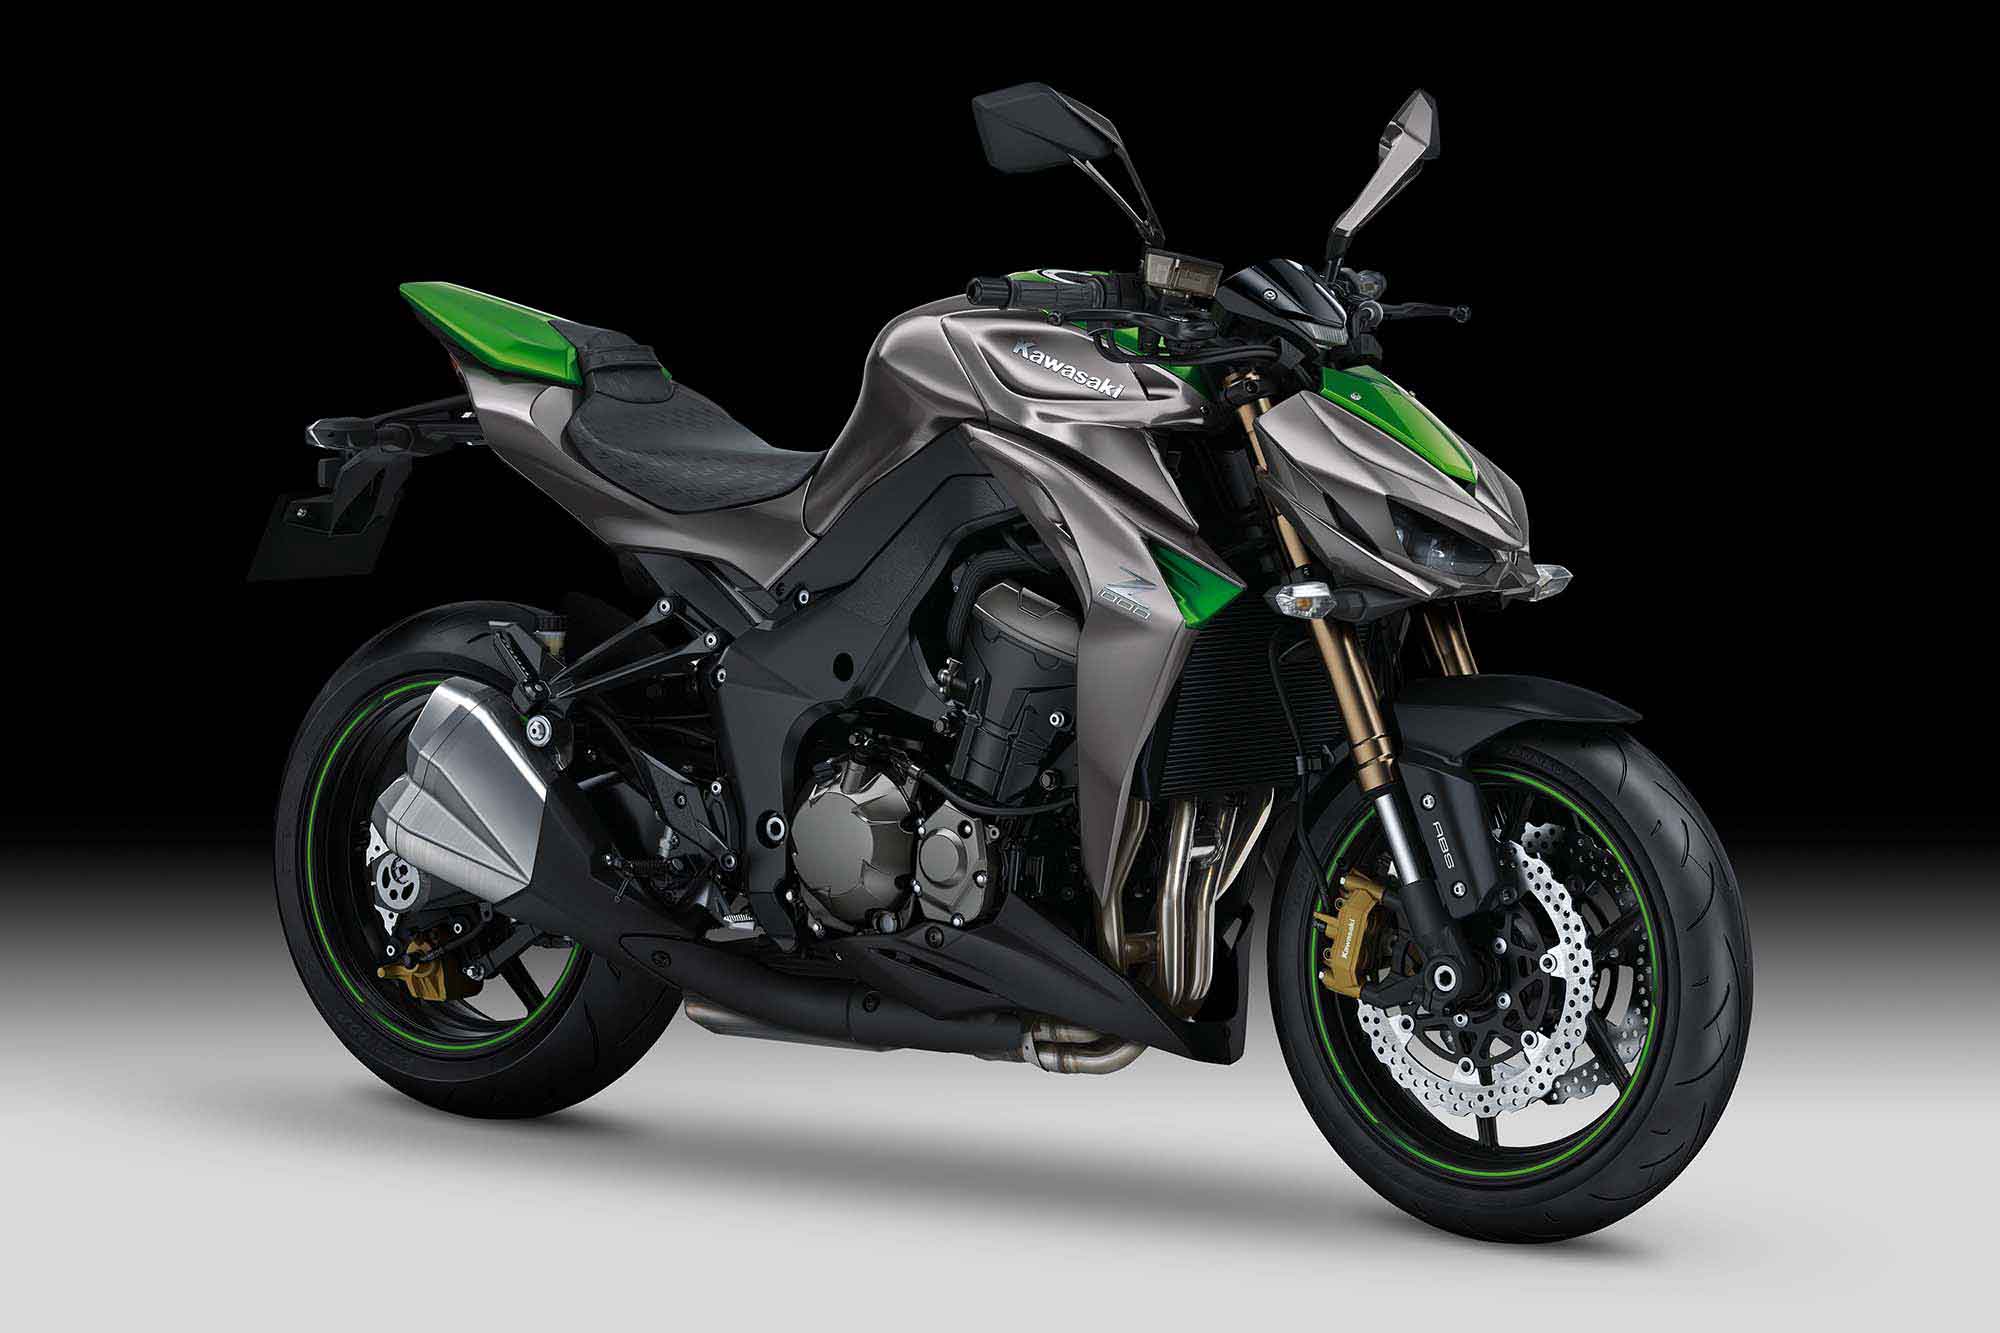 Siap Siap 8 Model Kawasaki Baru Mulai Januari Nanti Merdekacom